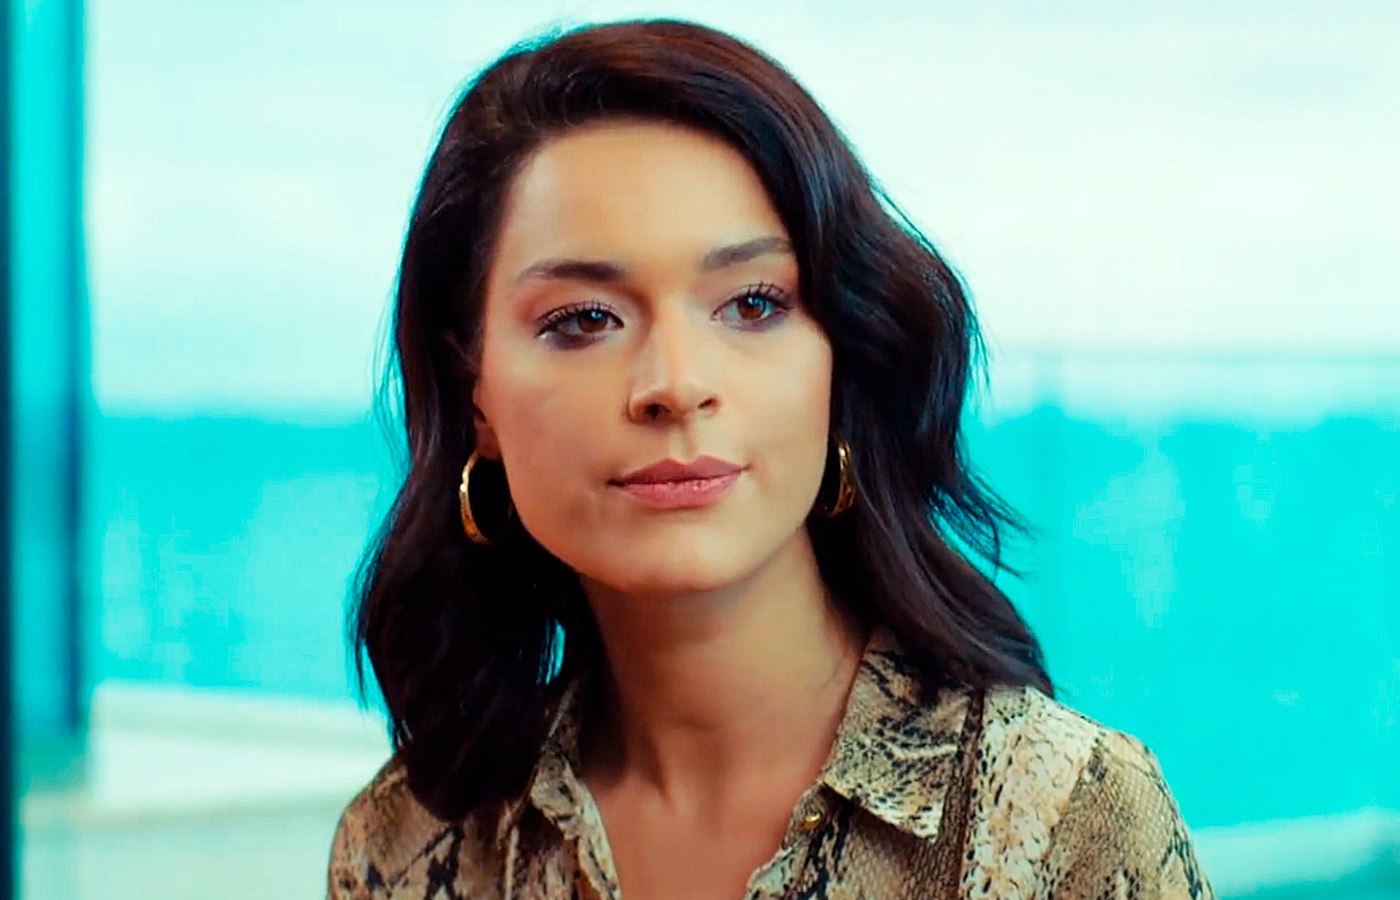 Şafak Pekdemir es la actriz que da vida a Zehra Argun en Pecado original